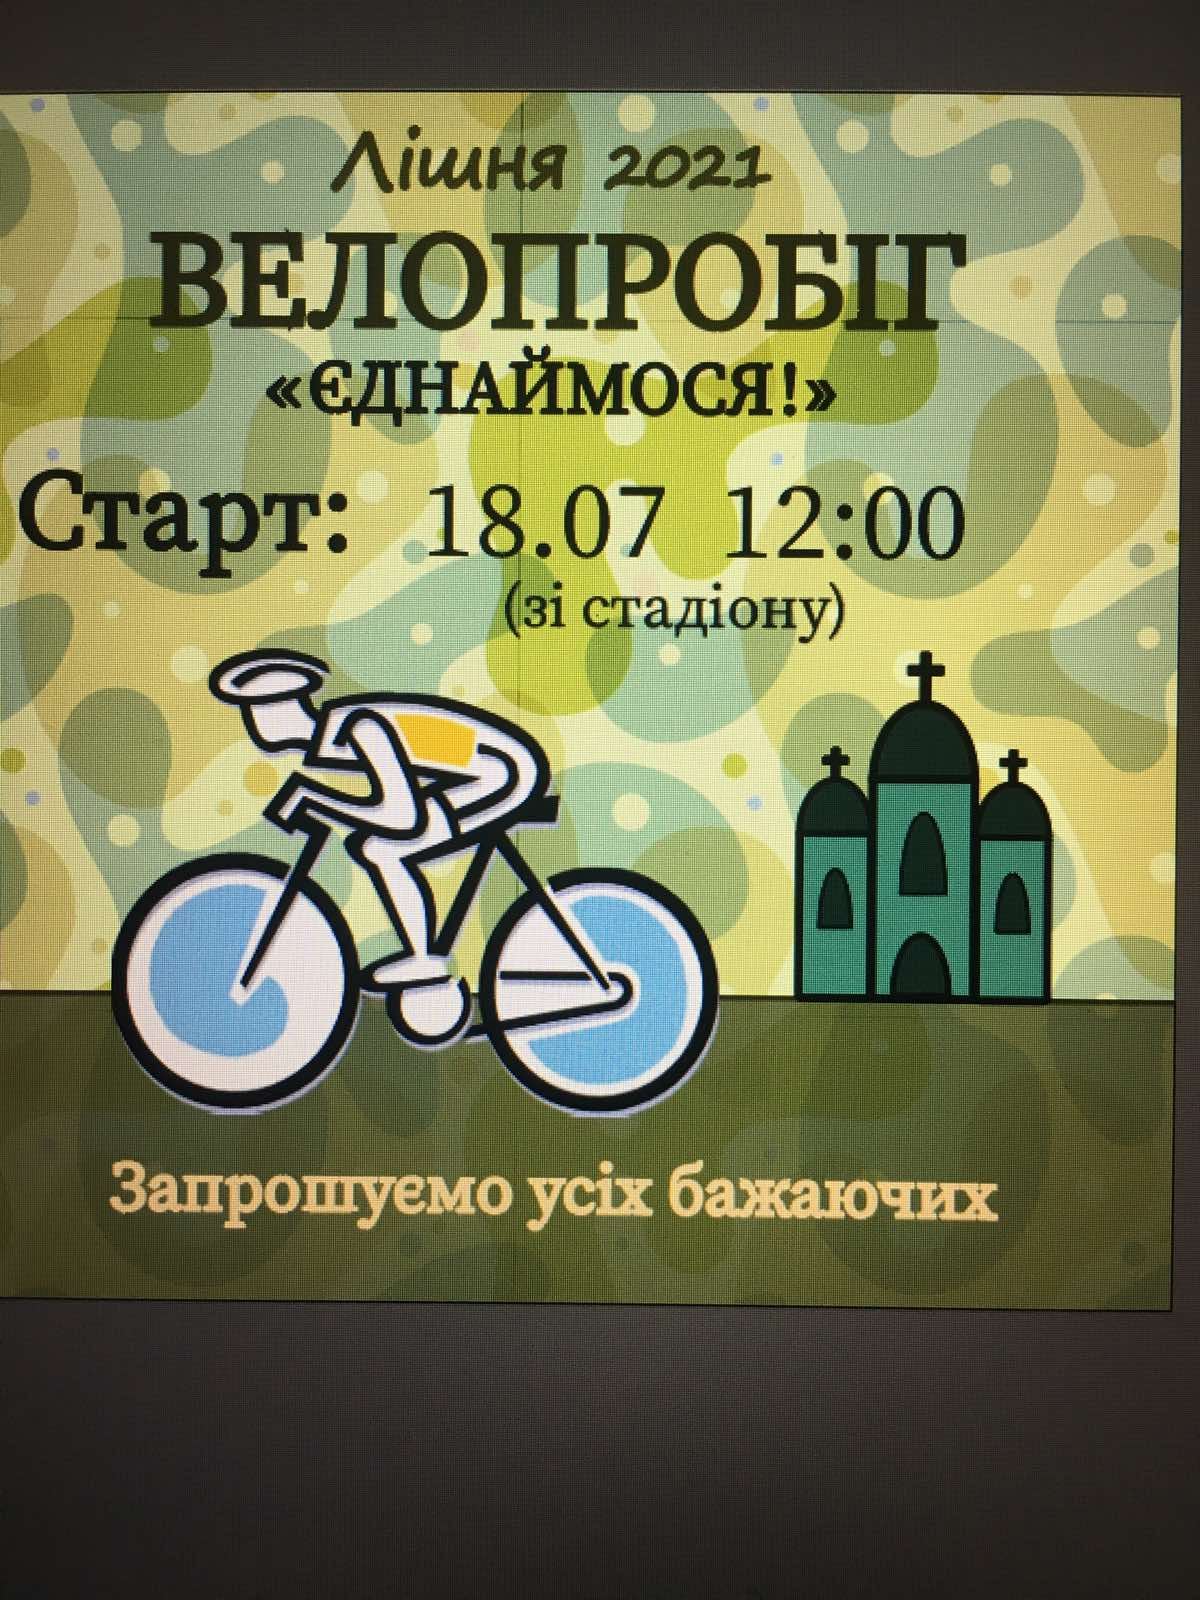 Долучайтеся! Велопробіг до 30-річчя Дня Незалежності України